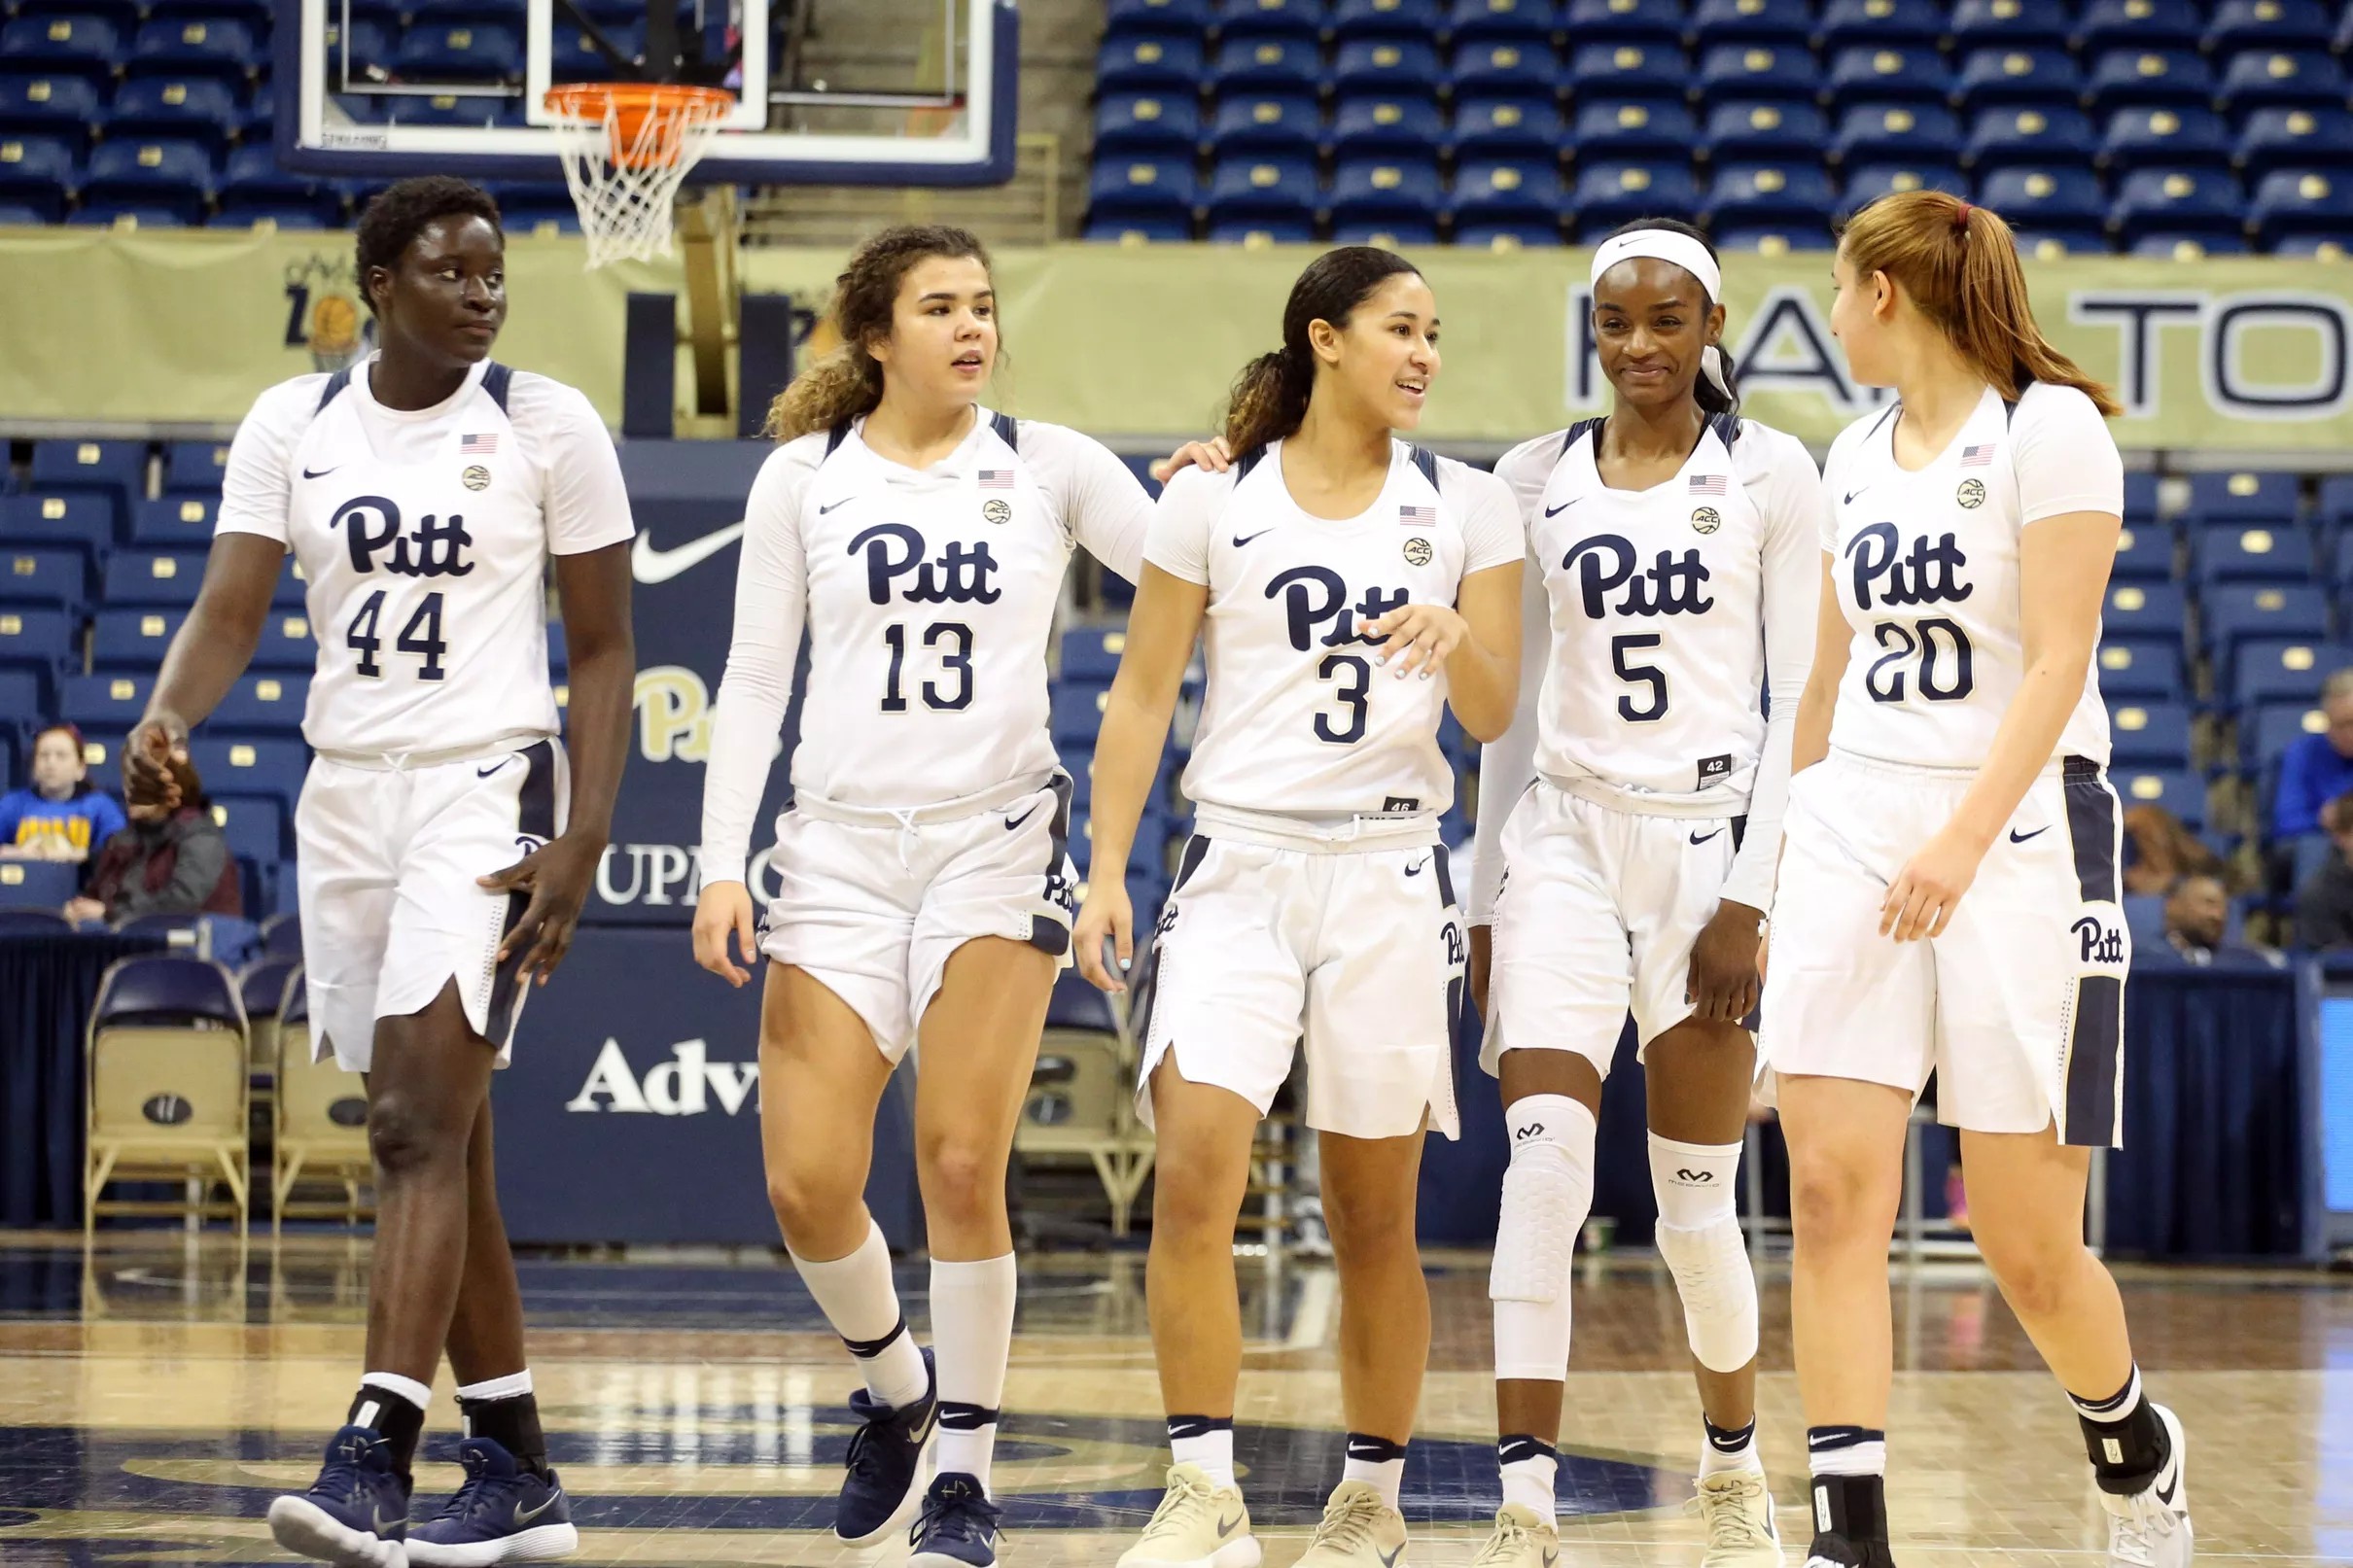 Pitt women’s basketball team has joined men in struggling